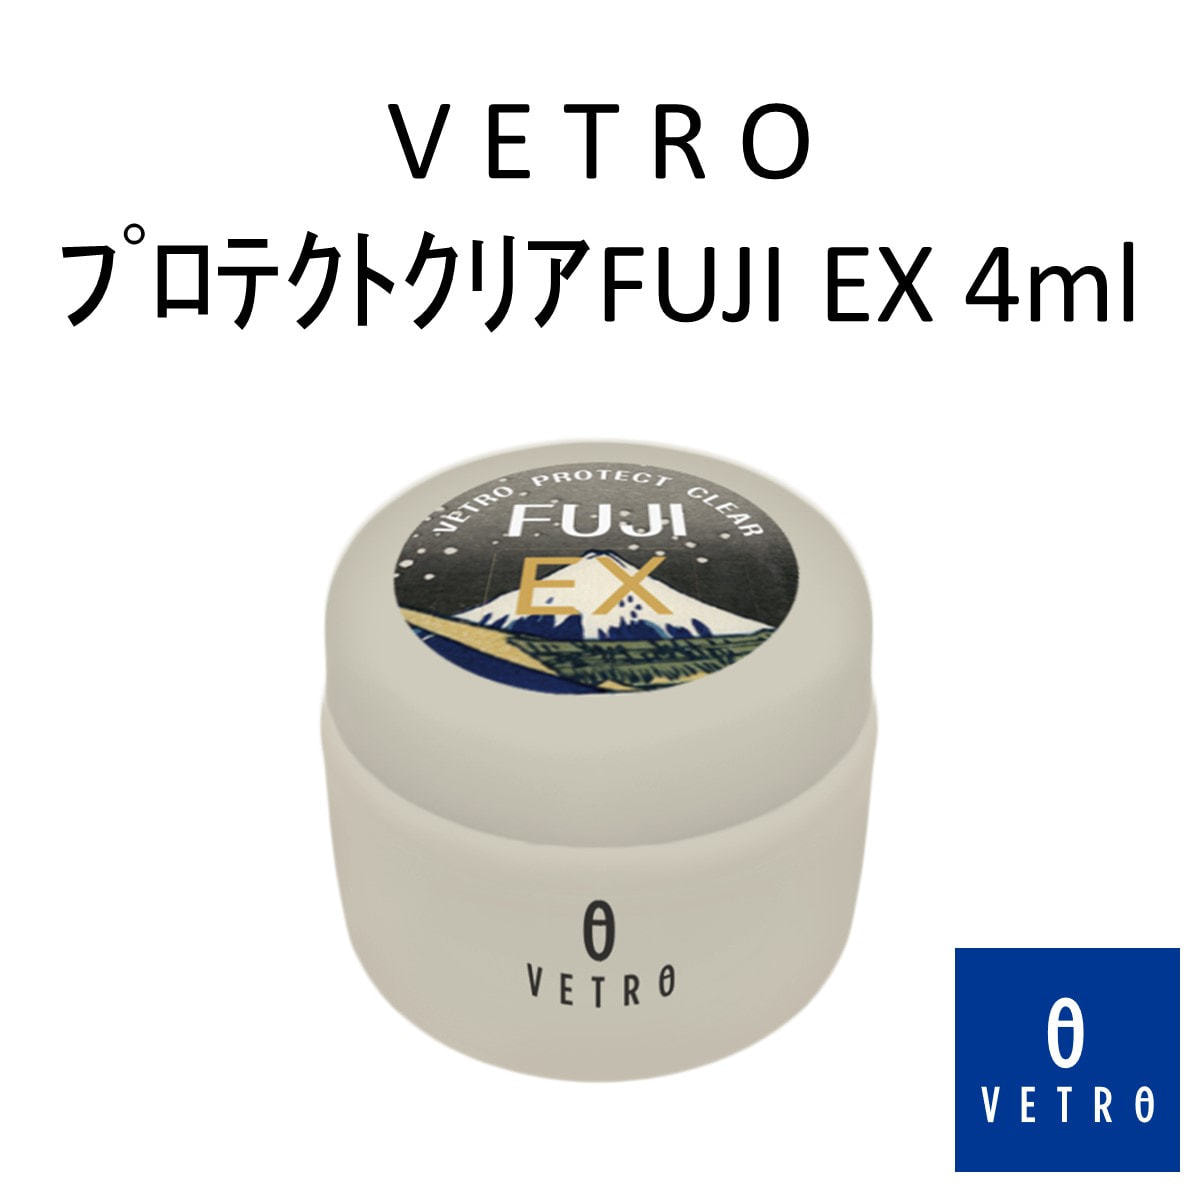 【VF-4】VETRO プロテクトクリア FUJI EX 4ml